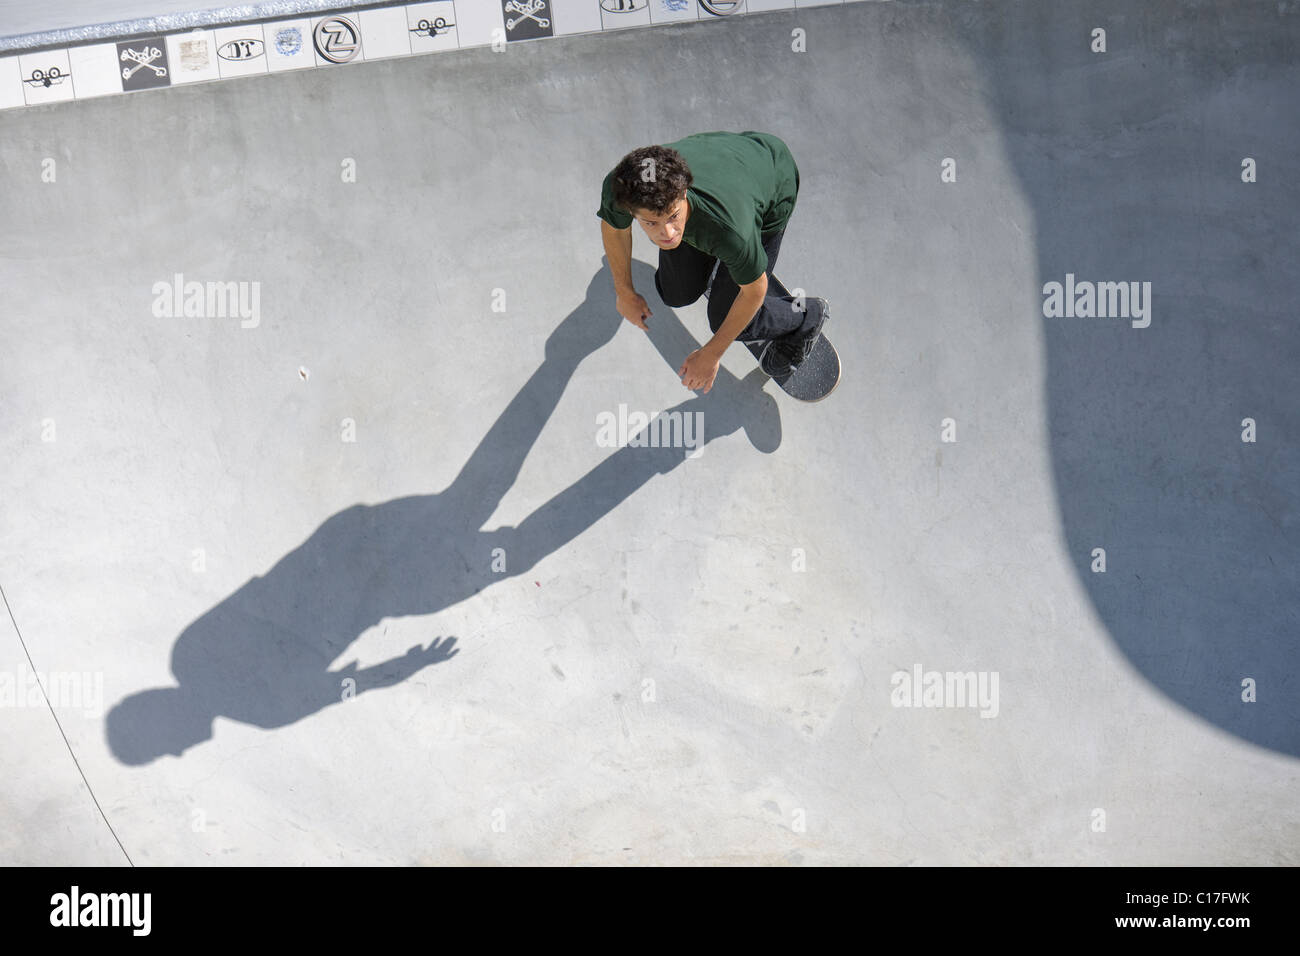 skate boarding in venice beach california skate park Stock Photo